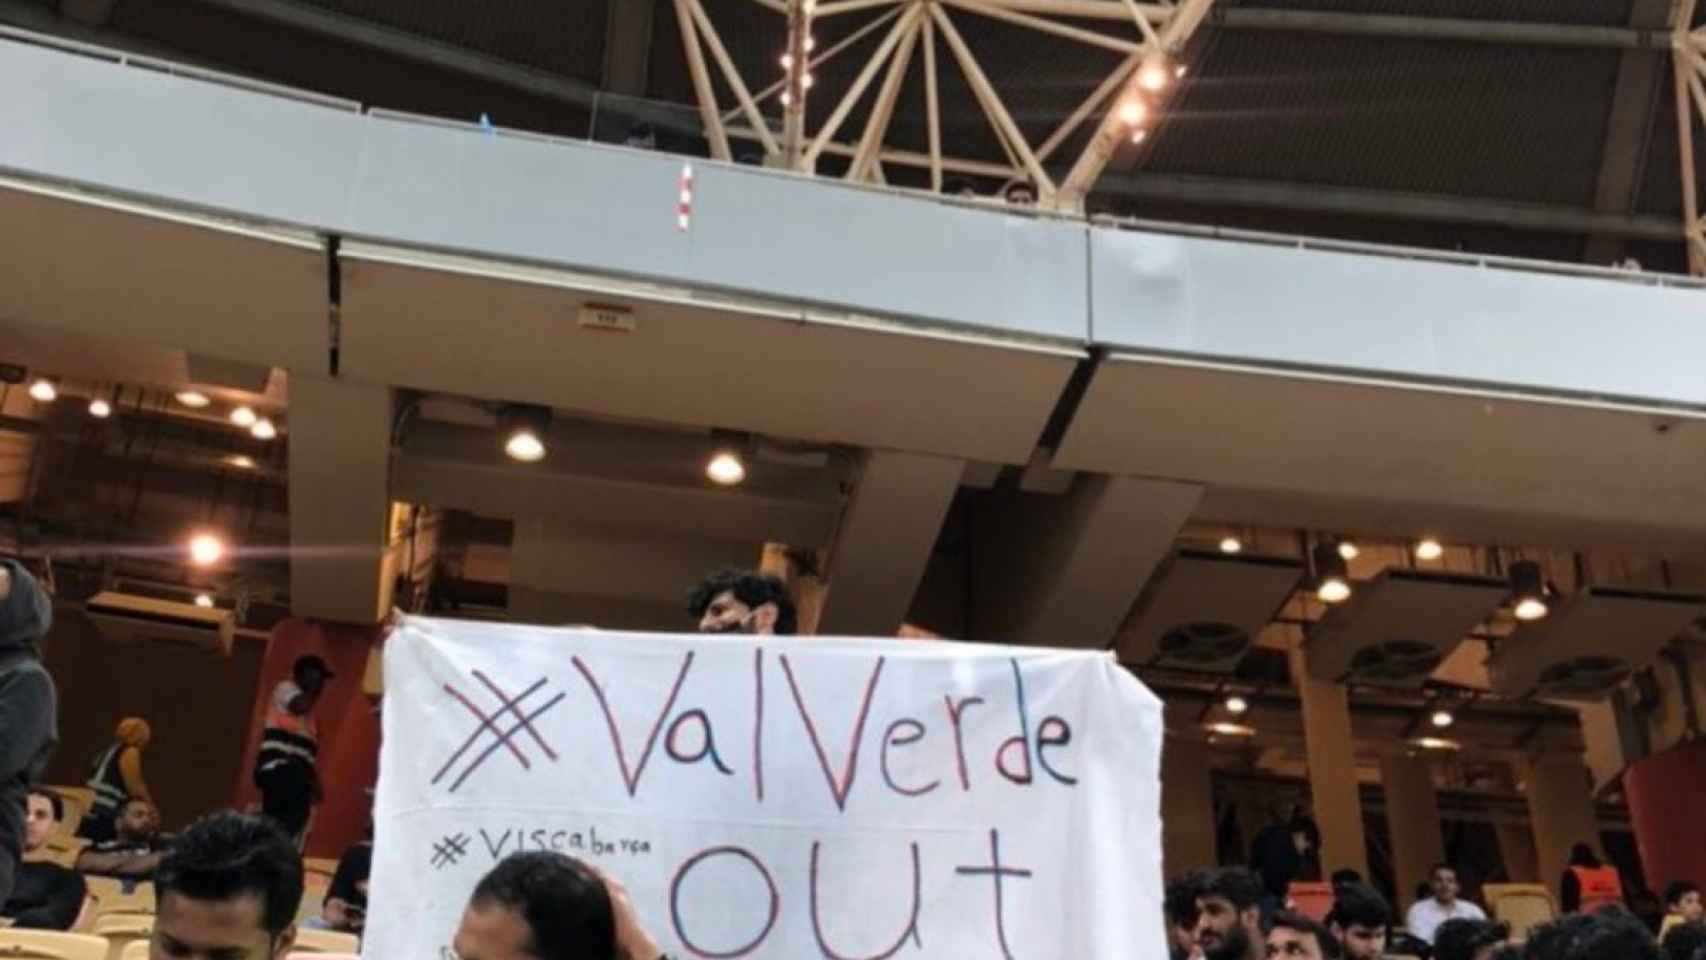 Imagen de la pancarta que se pudo ver en Arabia Saudí contra Valverde | REDES